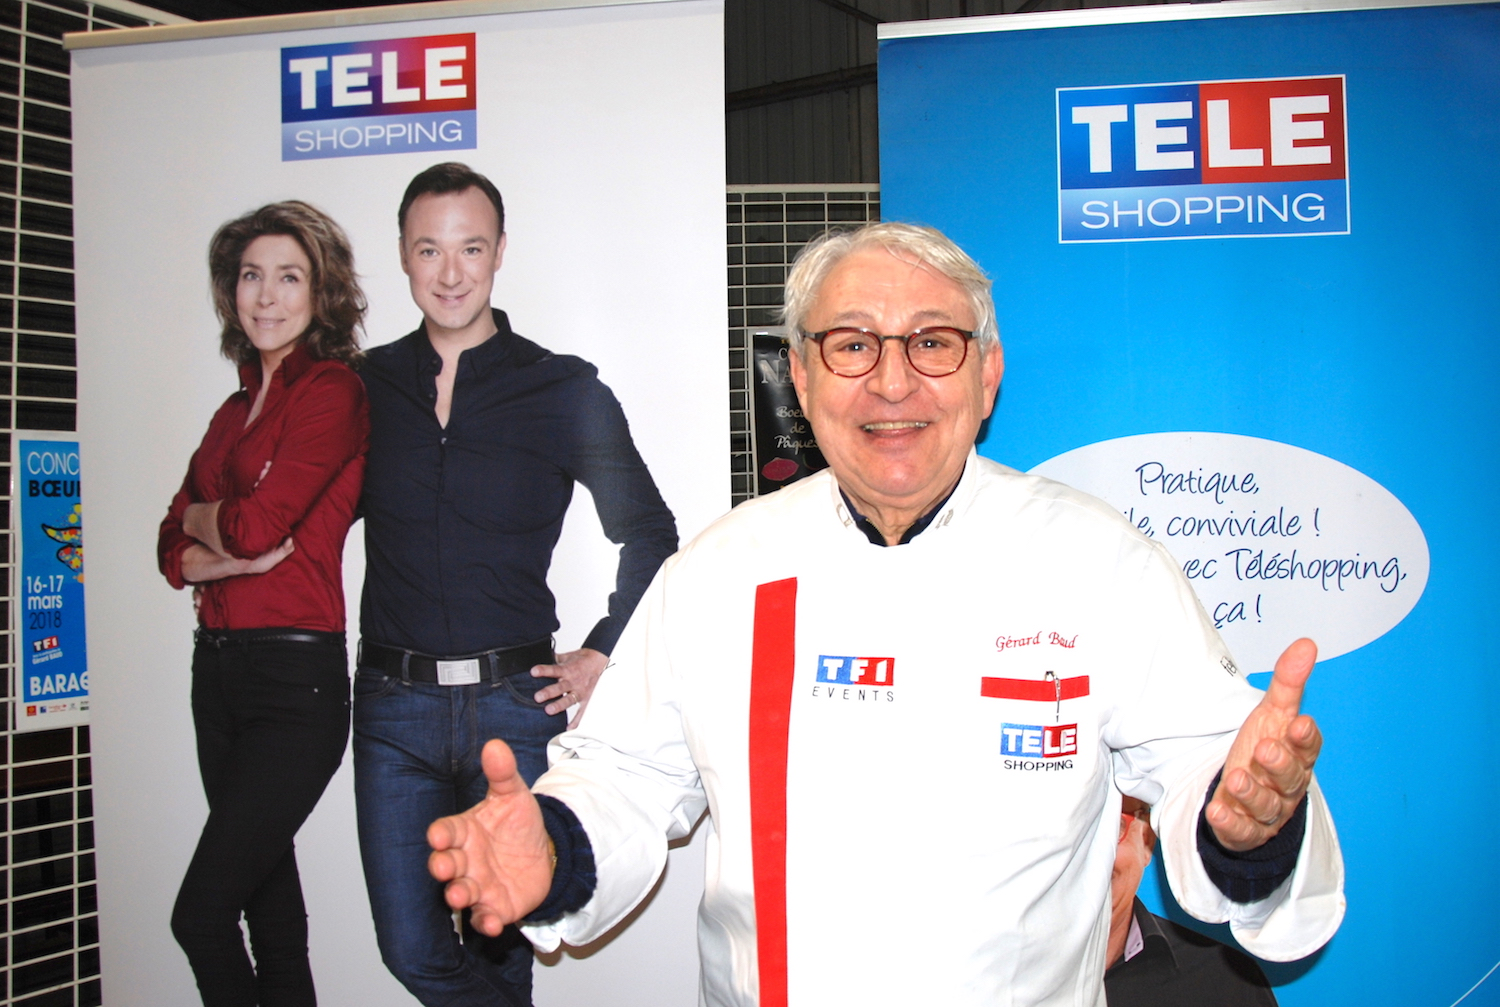 Gérard Baud, chef cuisinier, animateur de l'émission Téléshopping de TF1, invité du concours culinaire.